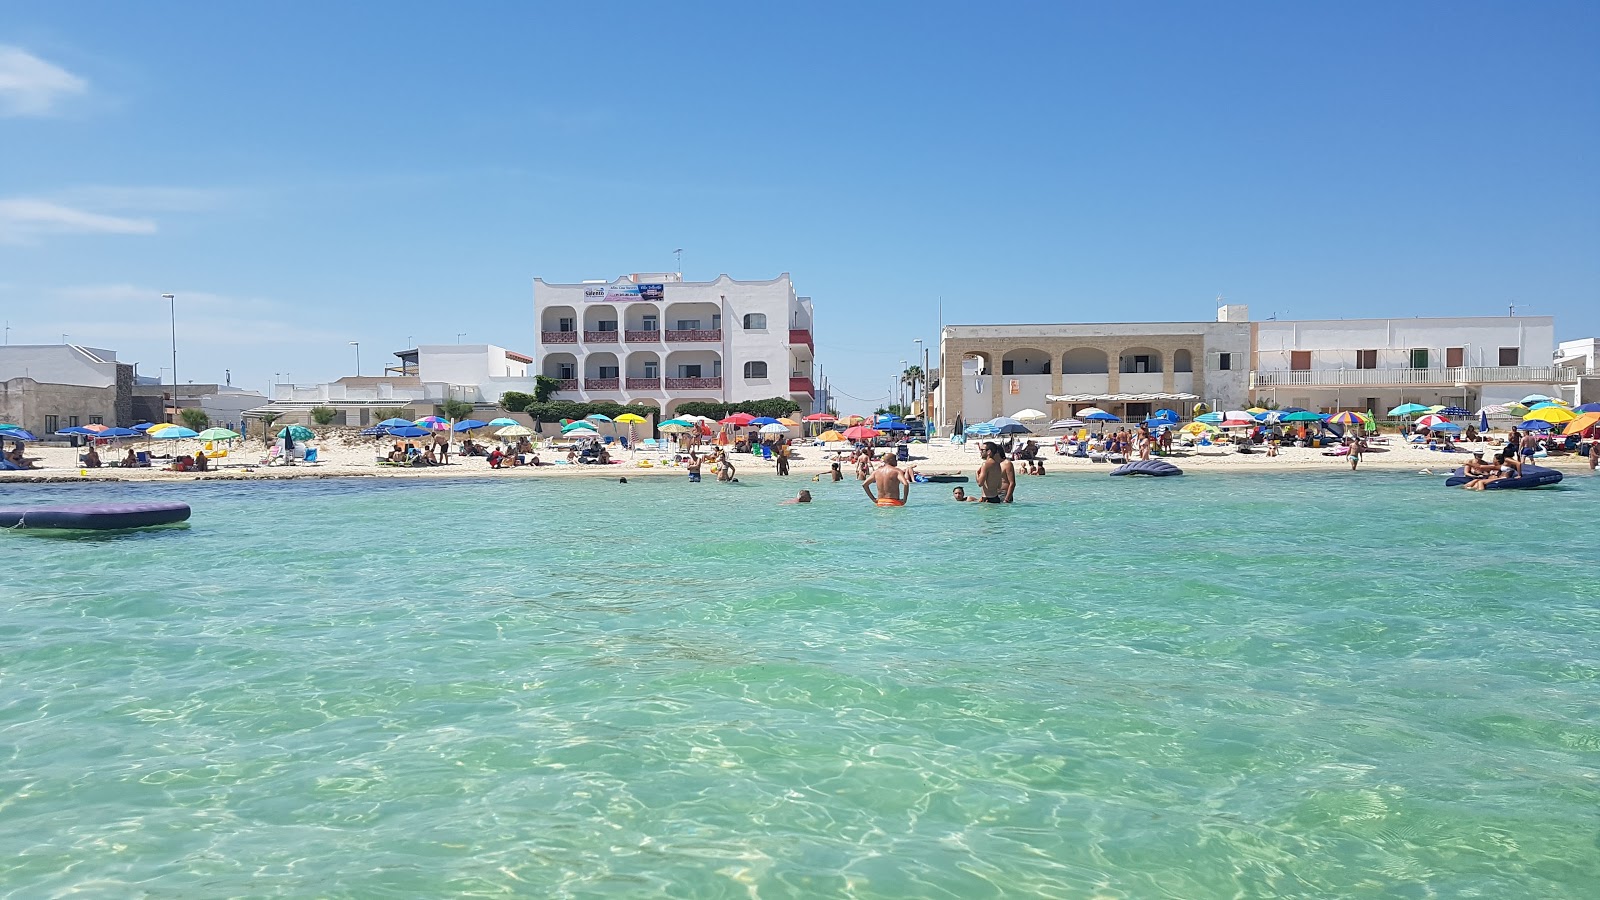 Foto de Spiaggia Porto Cesareo com praia espaçosa